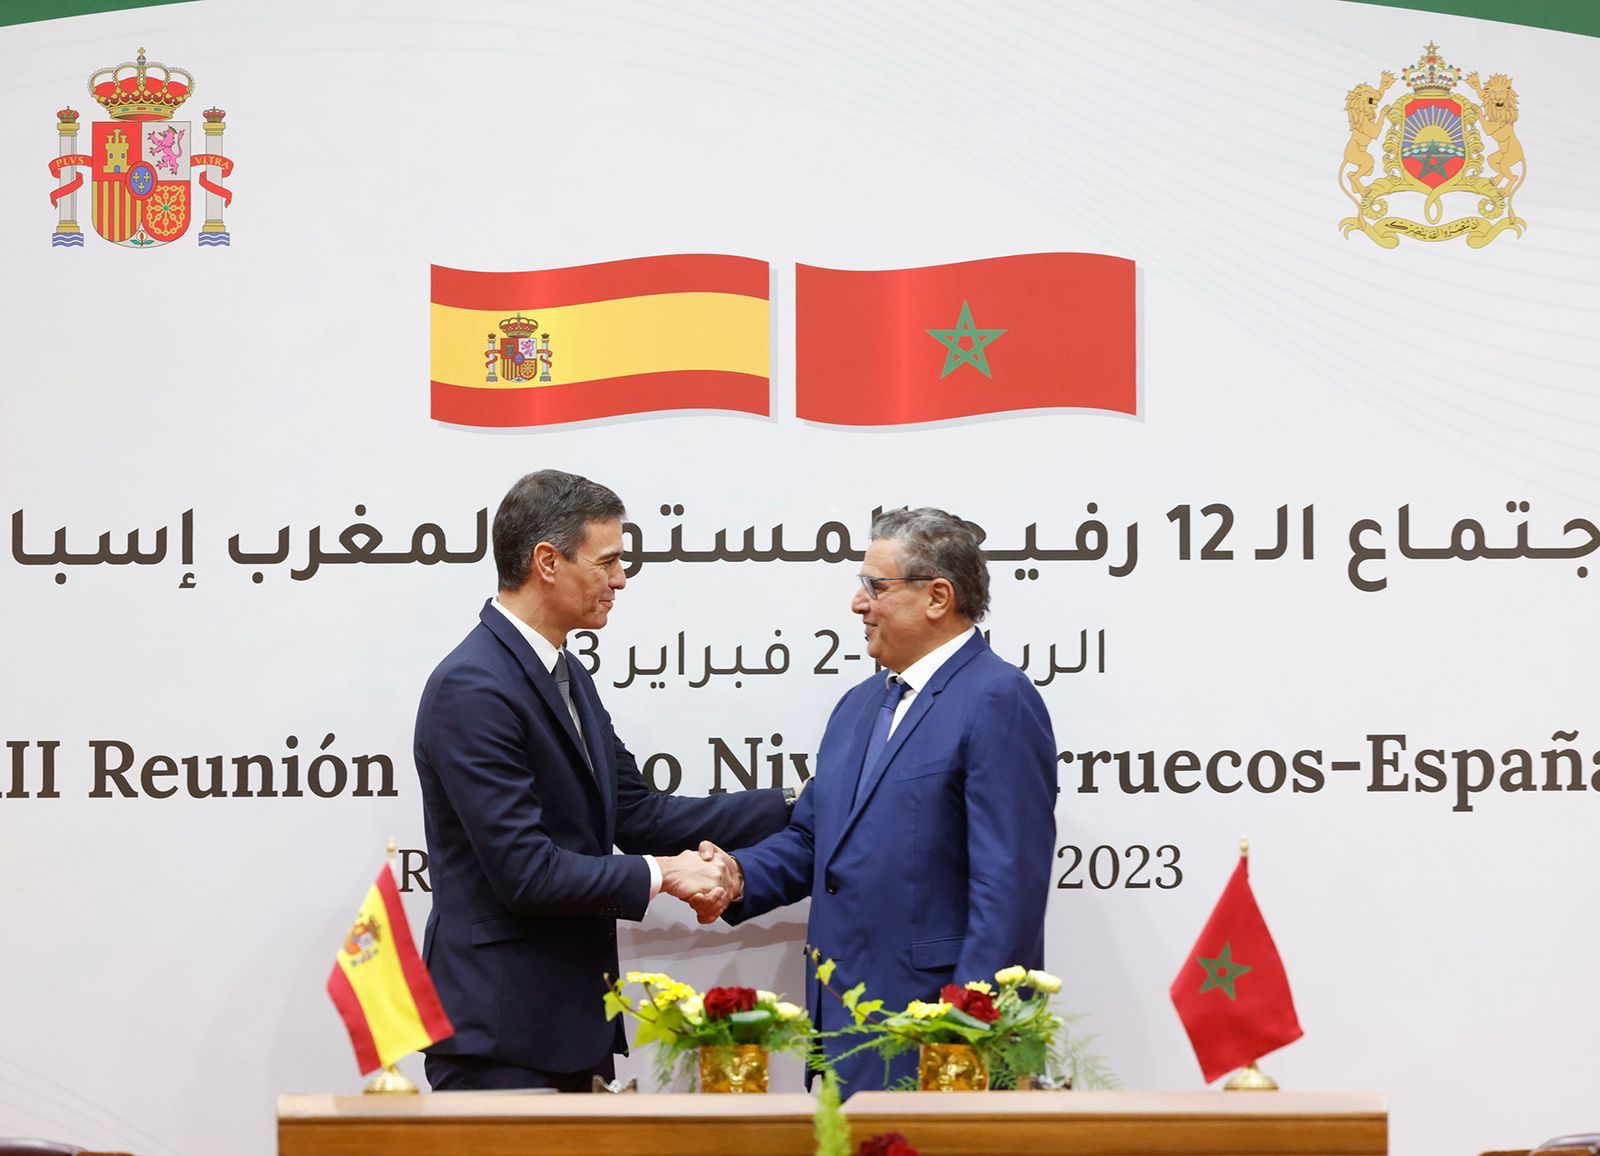 خبيرة لـمشاهد24: الثقة غذت شراكة المغرب وإسبانيا وفتحت آفاقا واعدة لتعاون الجارين